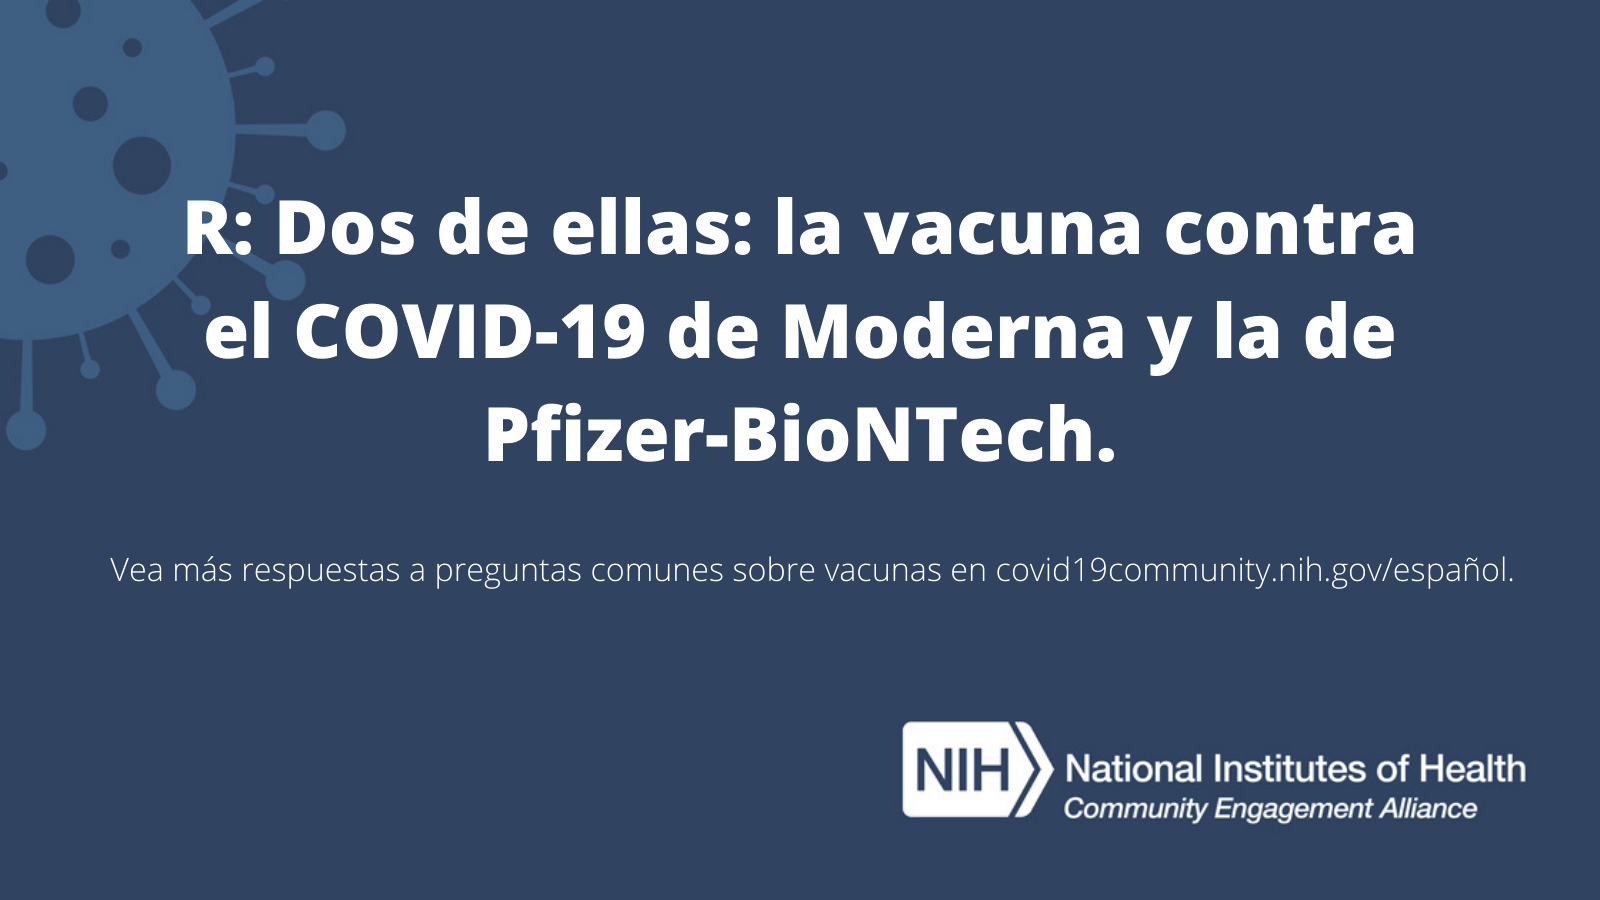 R: Dos de ellas: la vacuna contra el COVID-19 de Moderna y la de Pfizer-BioNTech. Vea más respuestas a preguntas sobre las vacunas en covid19community.nih.gov/español.